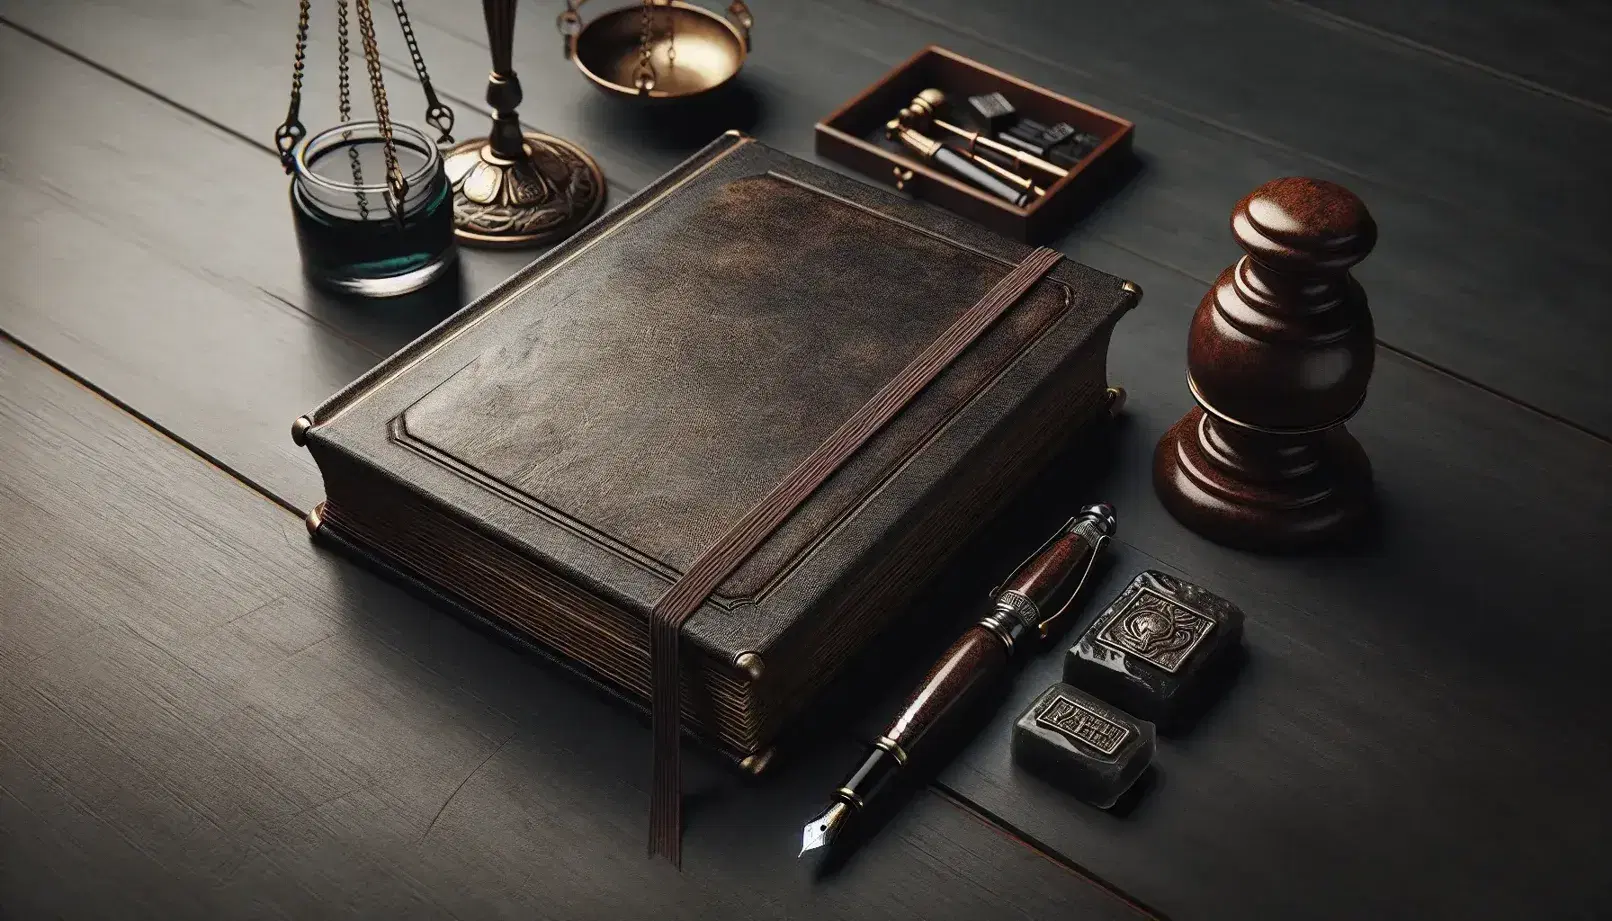 Mesa de madera oscura con libro cerrado de tapa dura marrón, pluma fuente negra, tintero de vidrio con tinta, sellos de cera y balanza de justicia dorada.